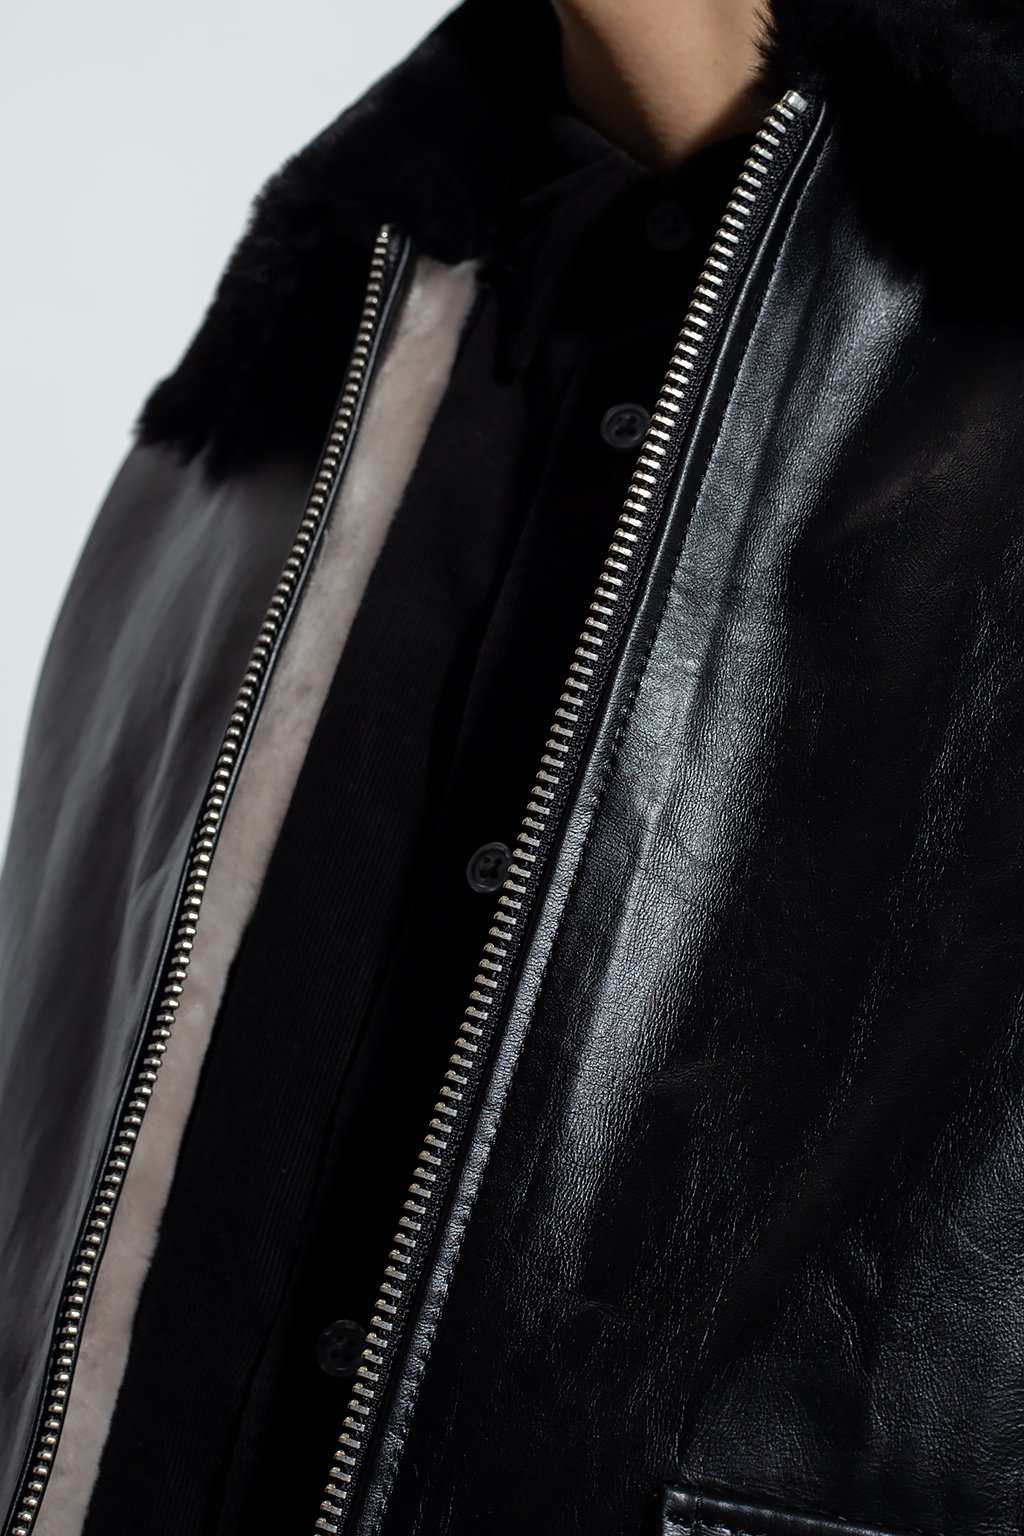 AllSaints ‘Worgan’ leather jacket